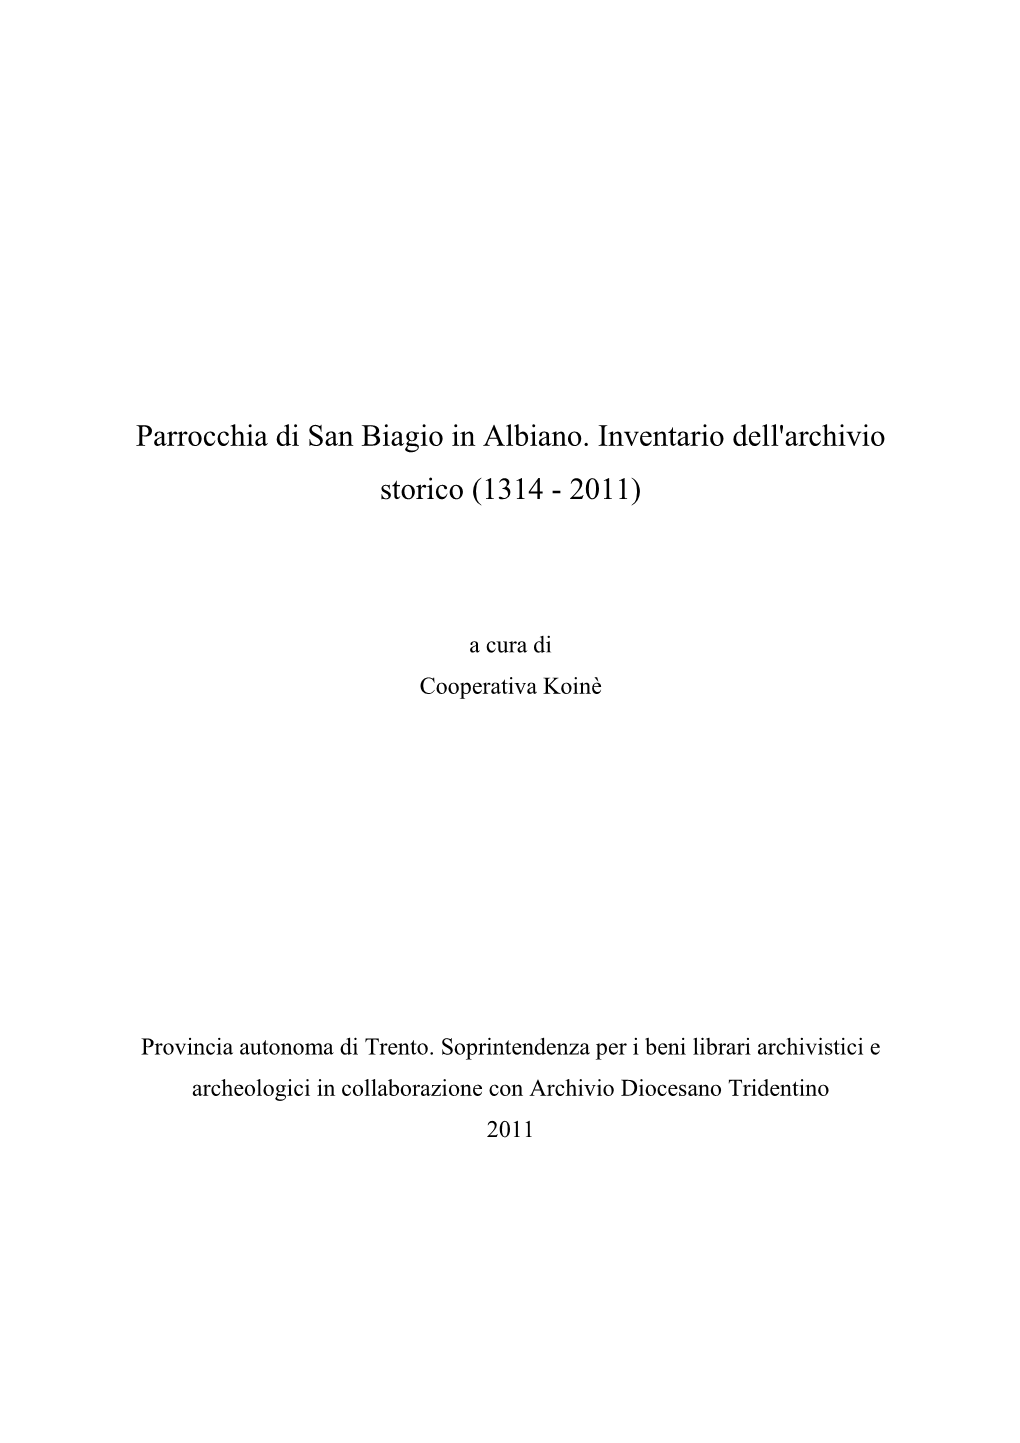 Parrocchia Di San Biagio in Albiano. Inventario Dell'archivio Storico (1314 - 2011)